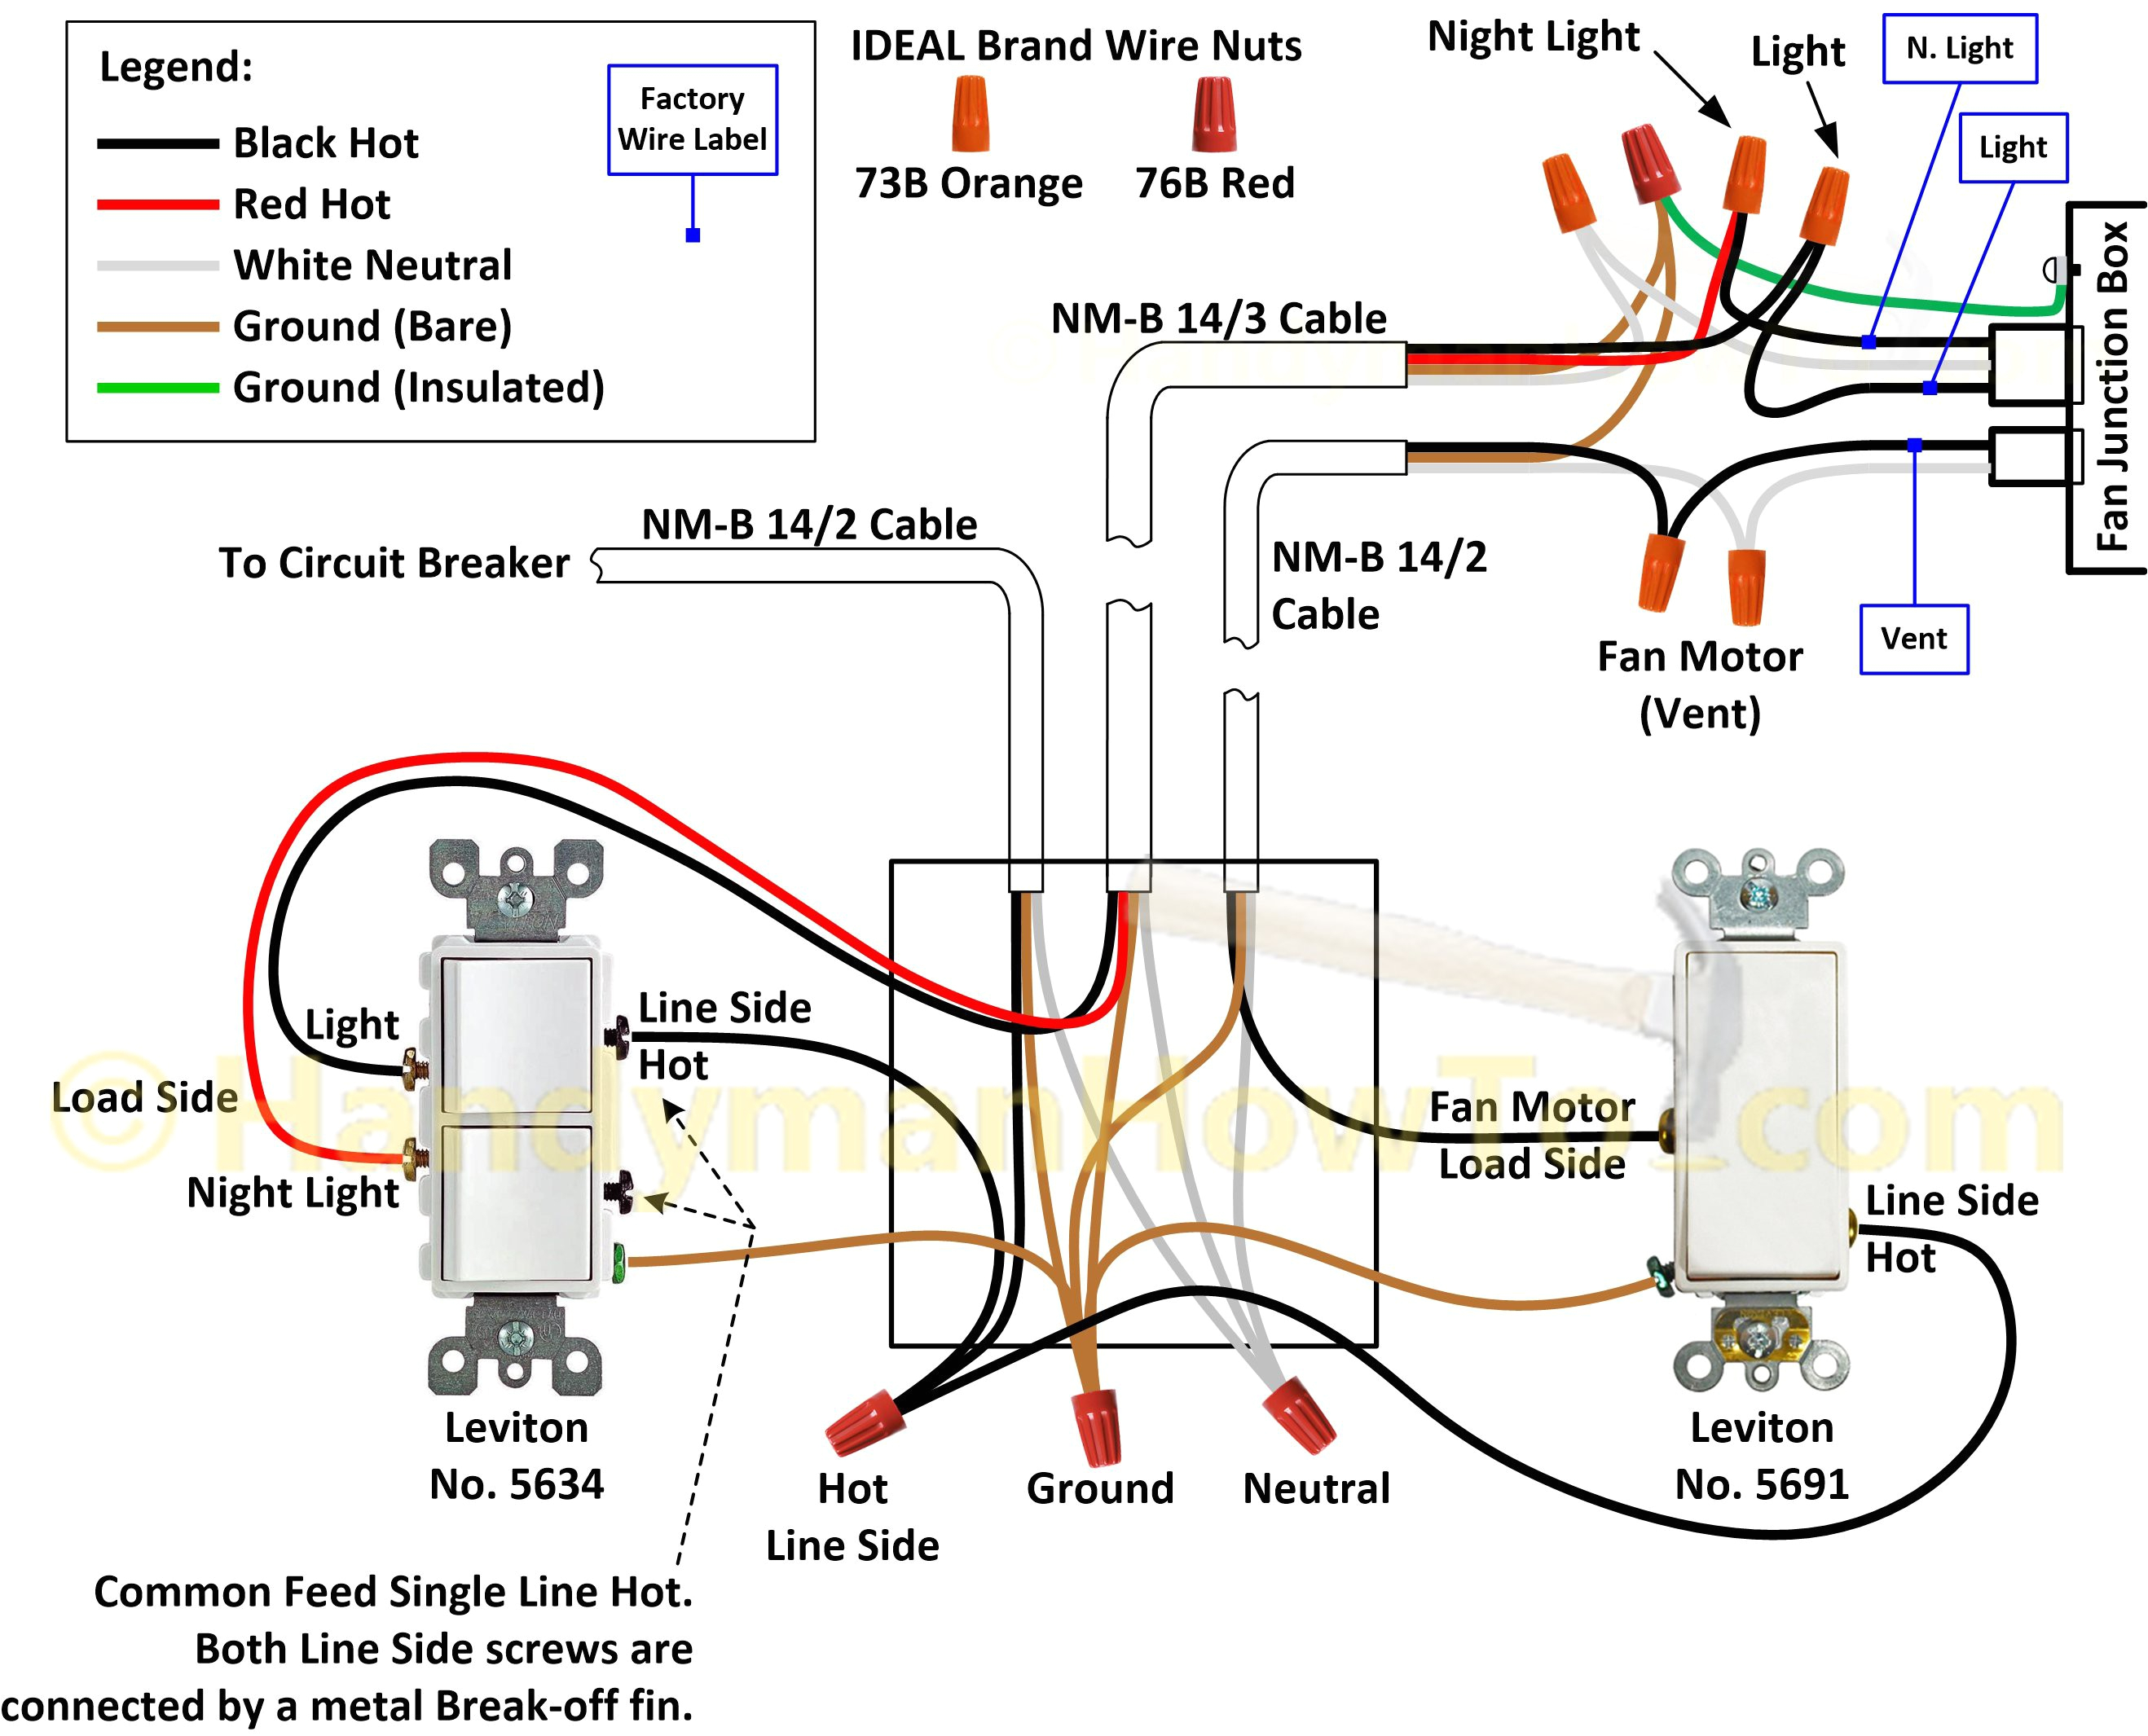 greenheck wiring diagrams wire management u0026 wiring diagramwiring diagrams fasco d114 wiring diagram greenheck wiring